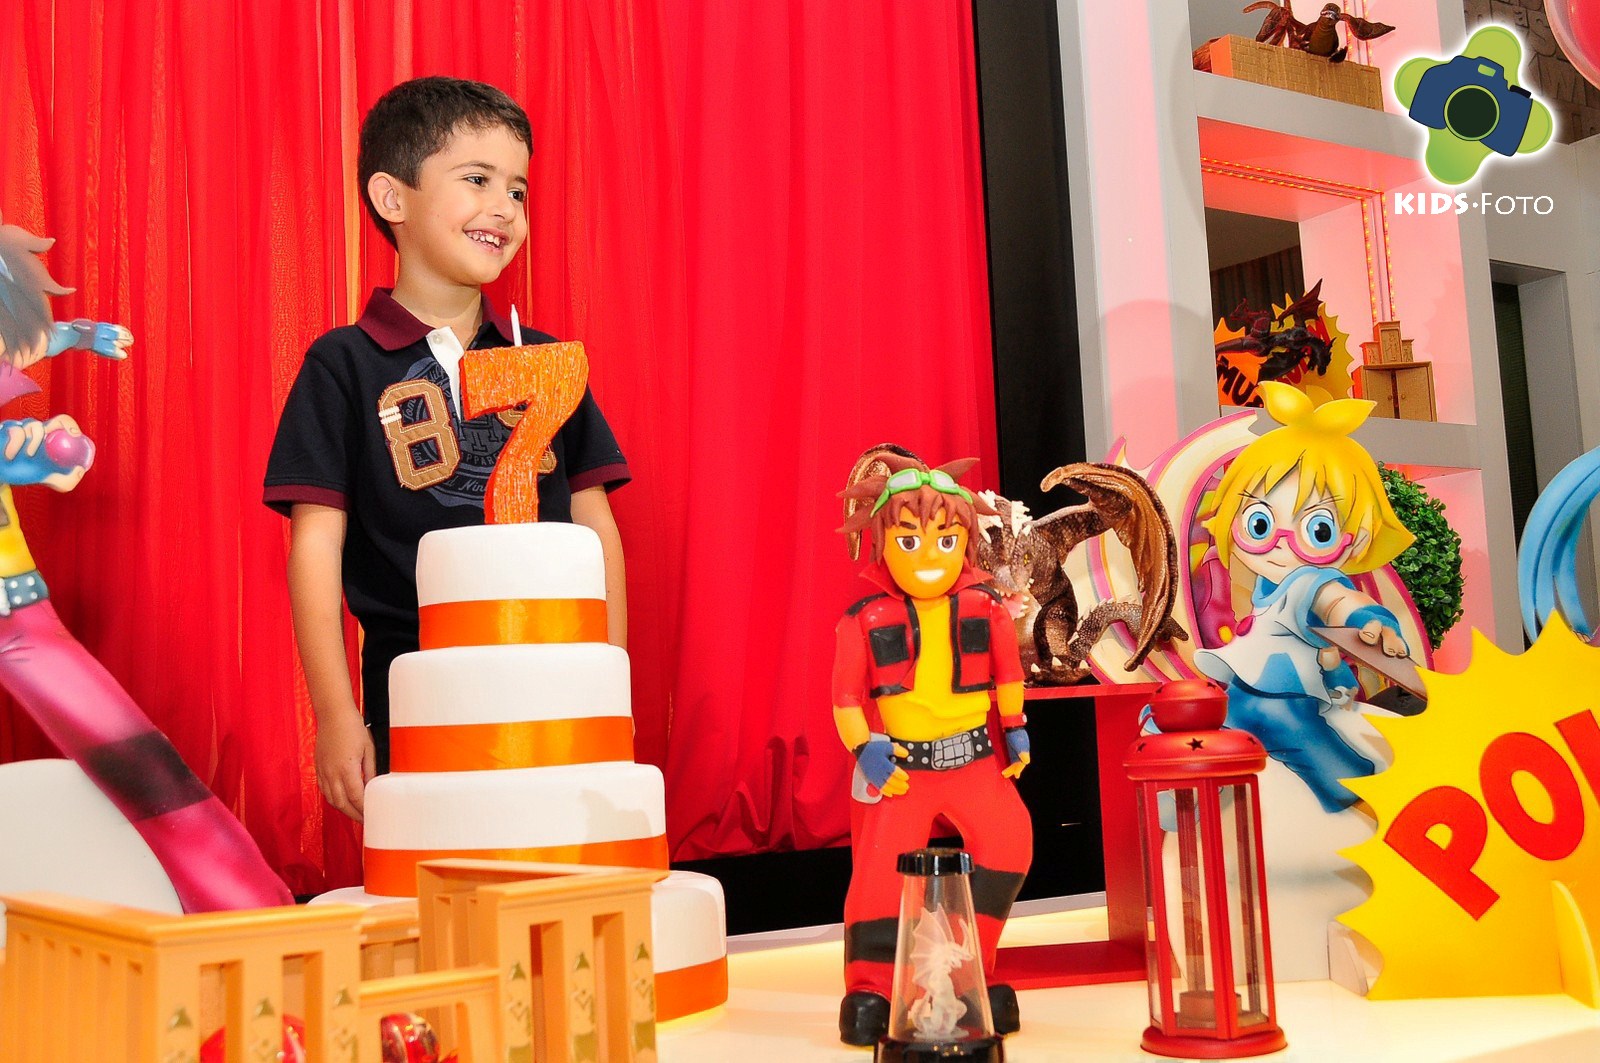 Festa de aniversário de 7 anos do Gustavo, realizada na Rola Festa, por Kids Foto